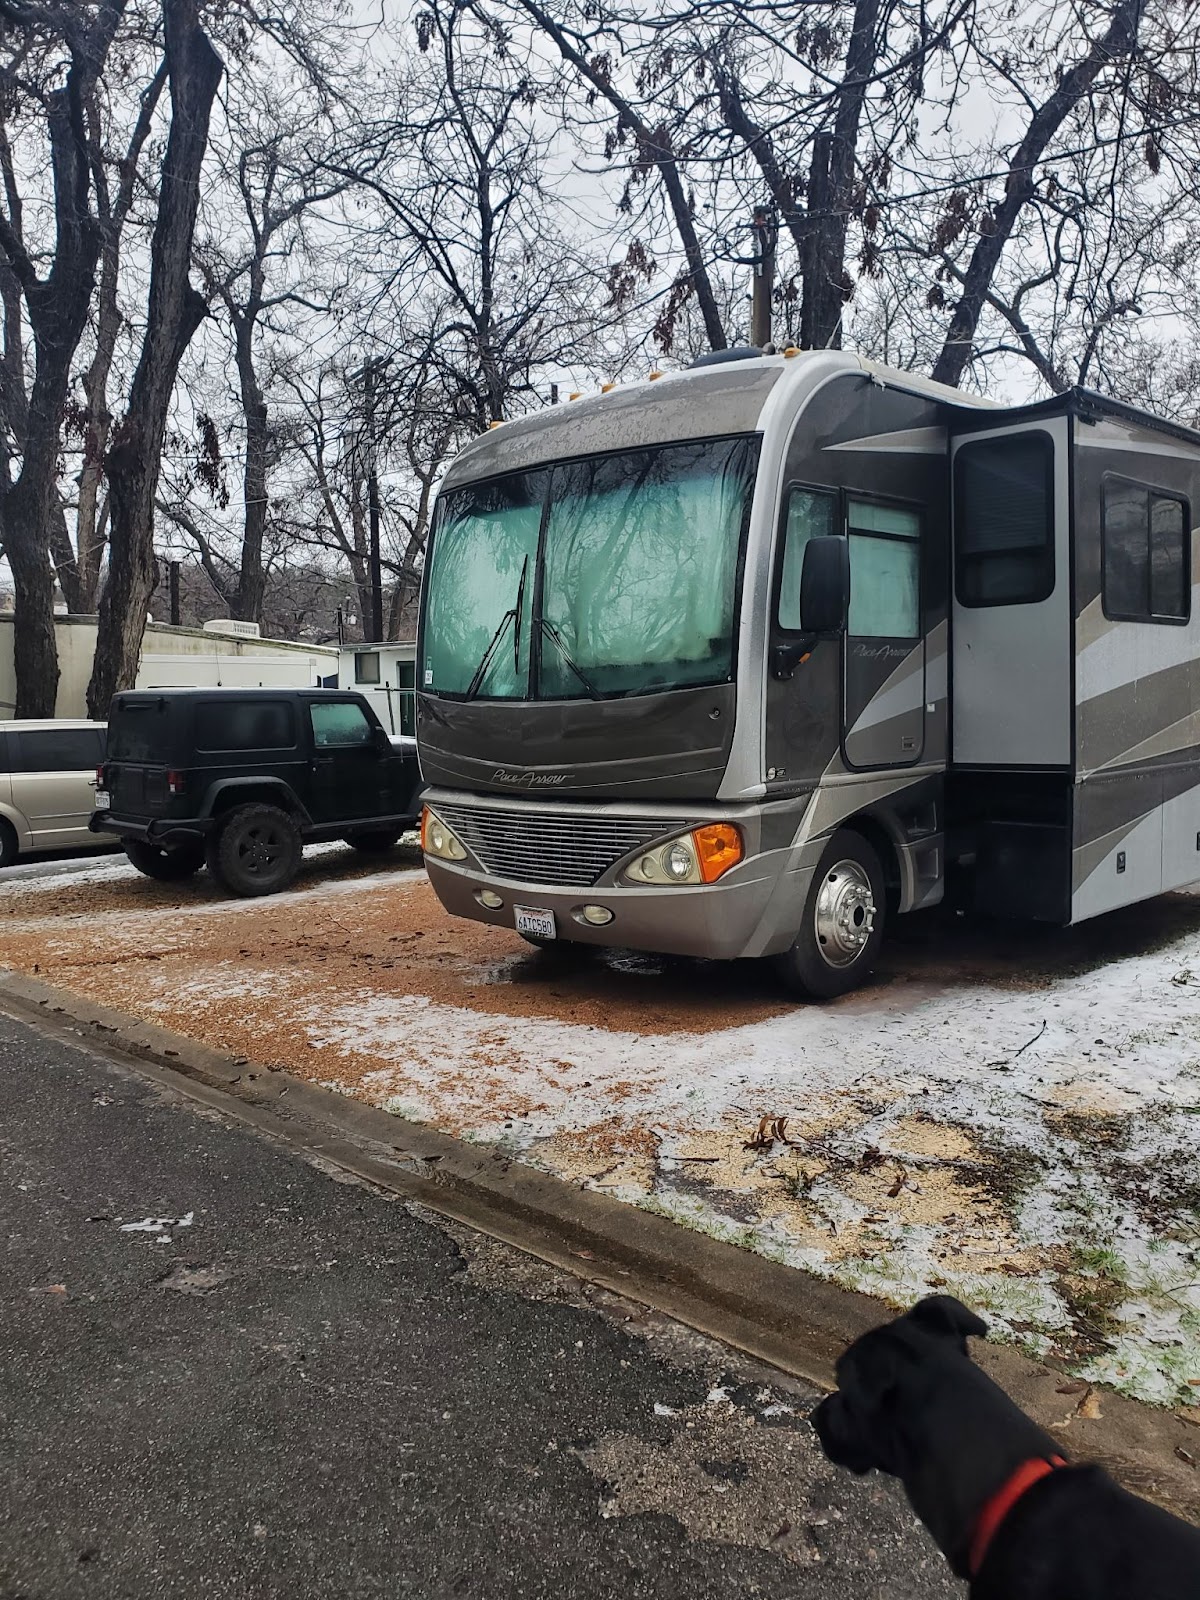 Una gran autocaravana aparcada en un aparcamiento nevado, con un gran perro negro en la esquina inferior derecha.